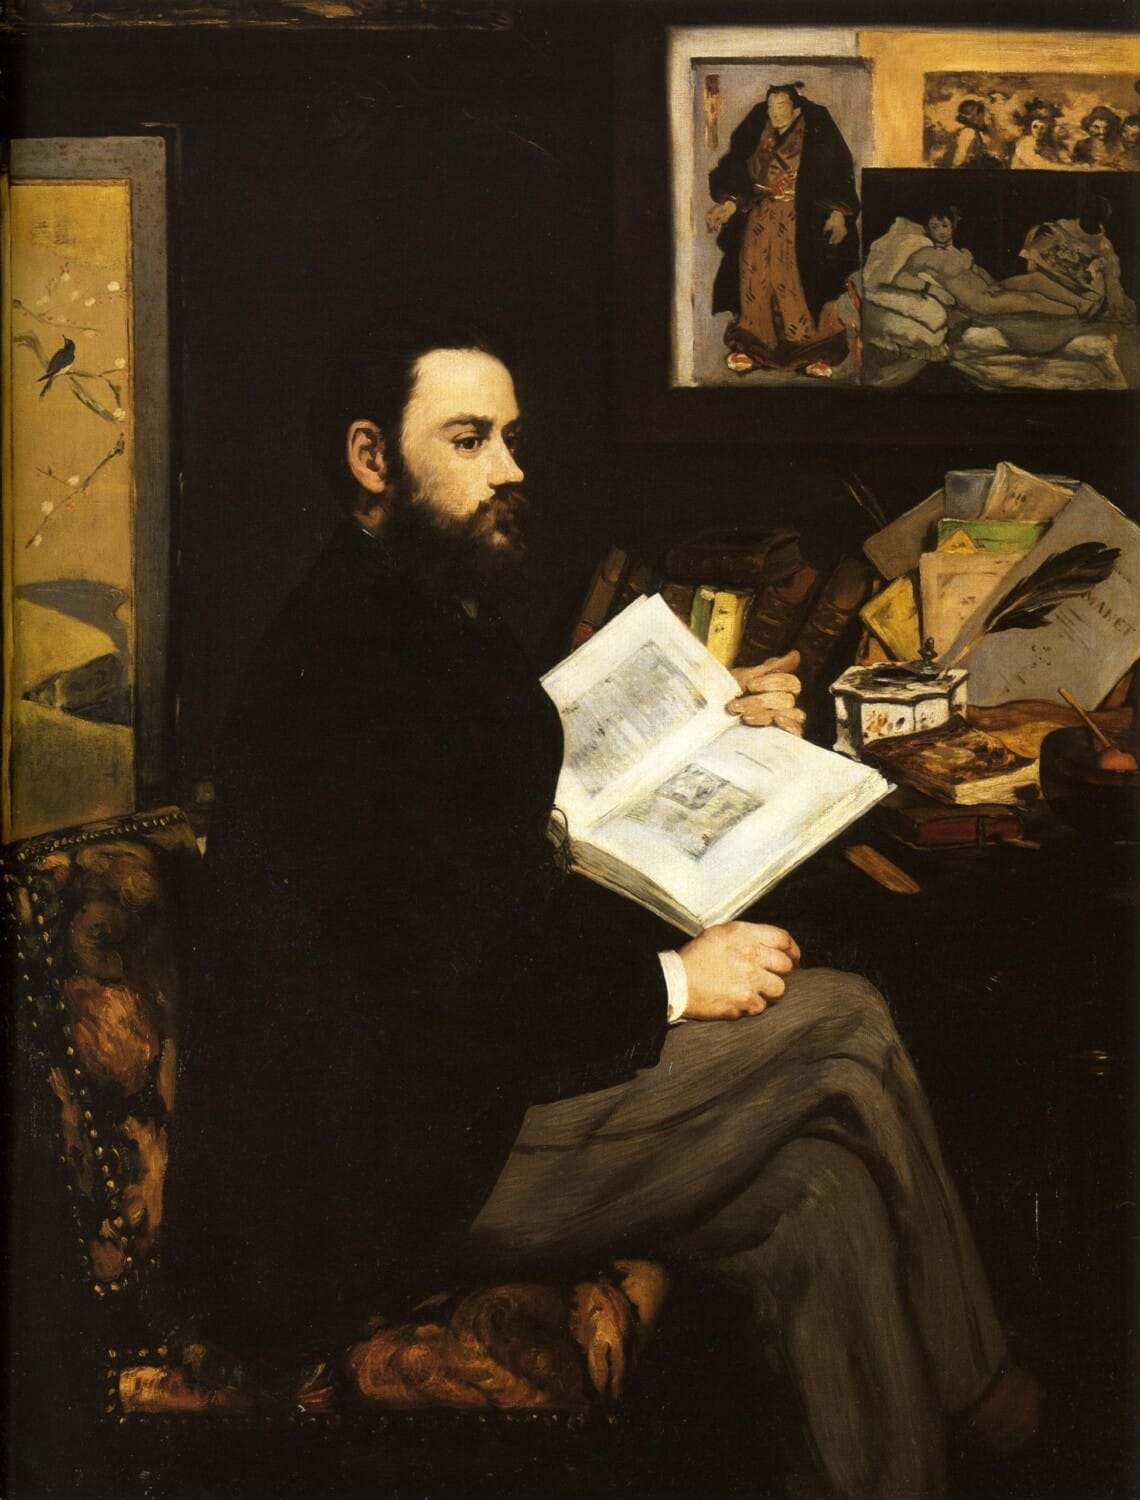 Émile Zola retratado por Manet (1868).